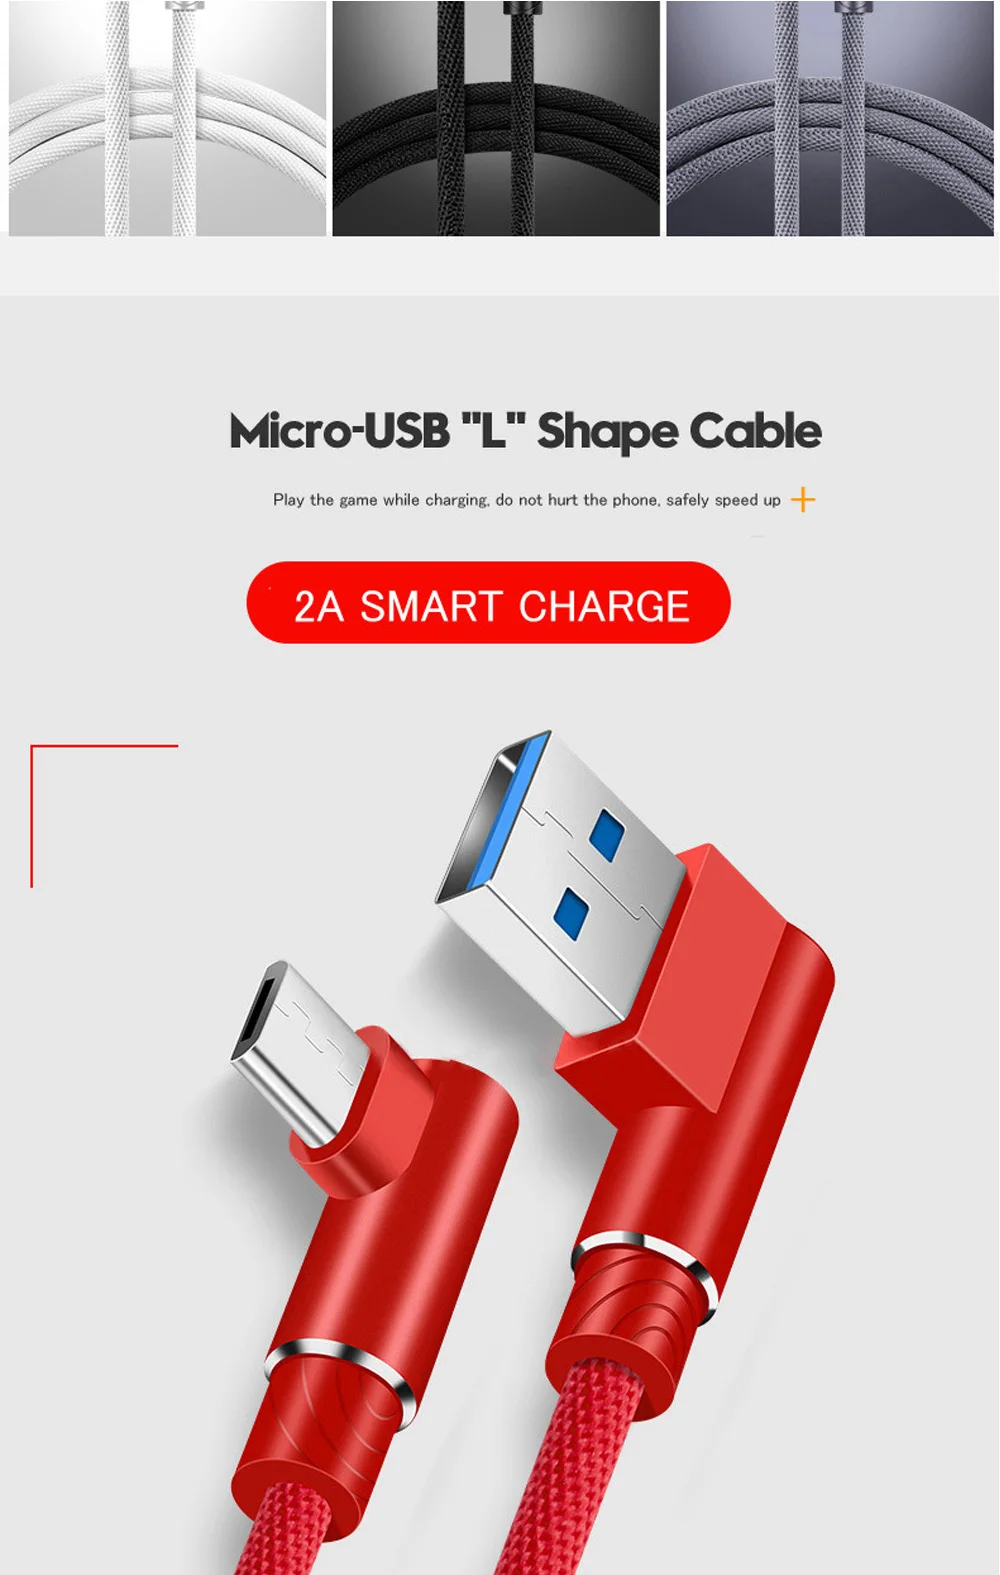 1 м 2 м 3 м 90 градусов локоть нейлон микро USB данных зарядное устройство быстрый кабель для samsung/sony/Xiaomi Android телефон происхождения длинный шнур зарядки